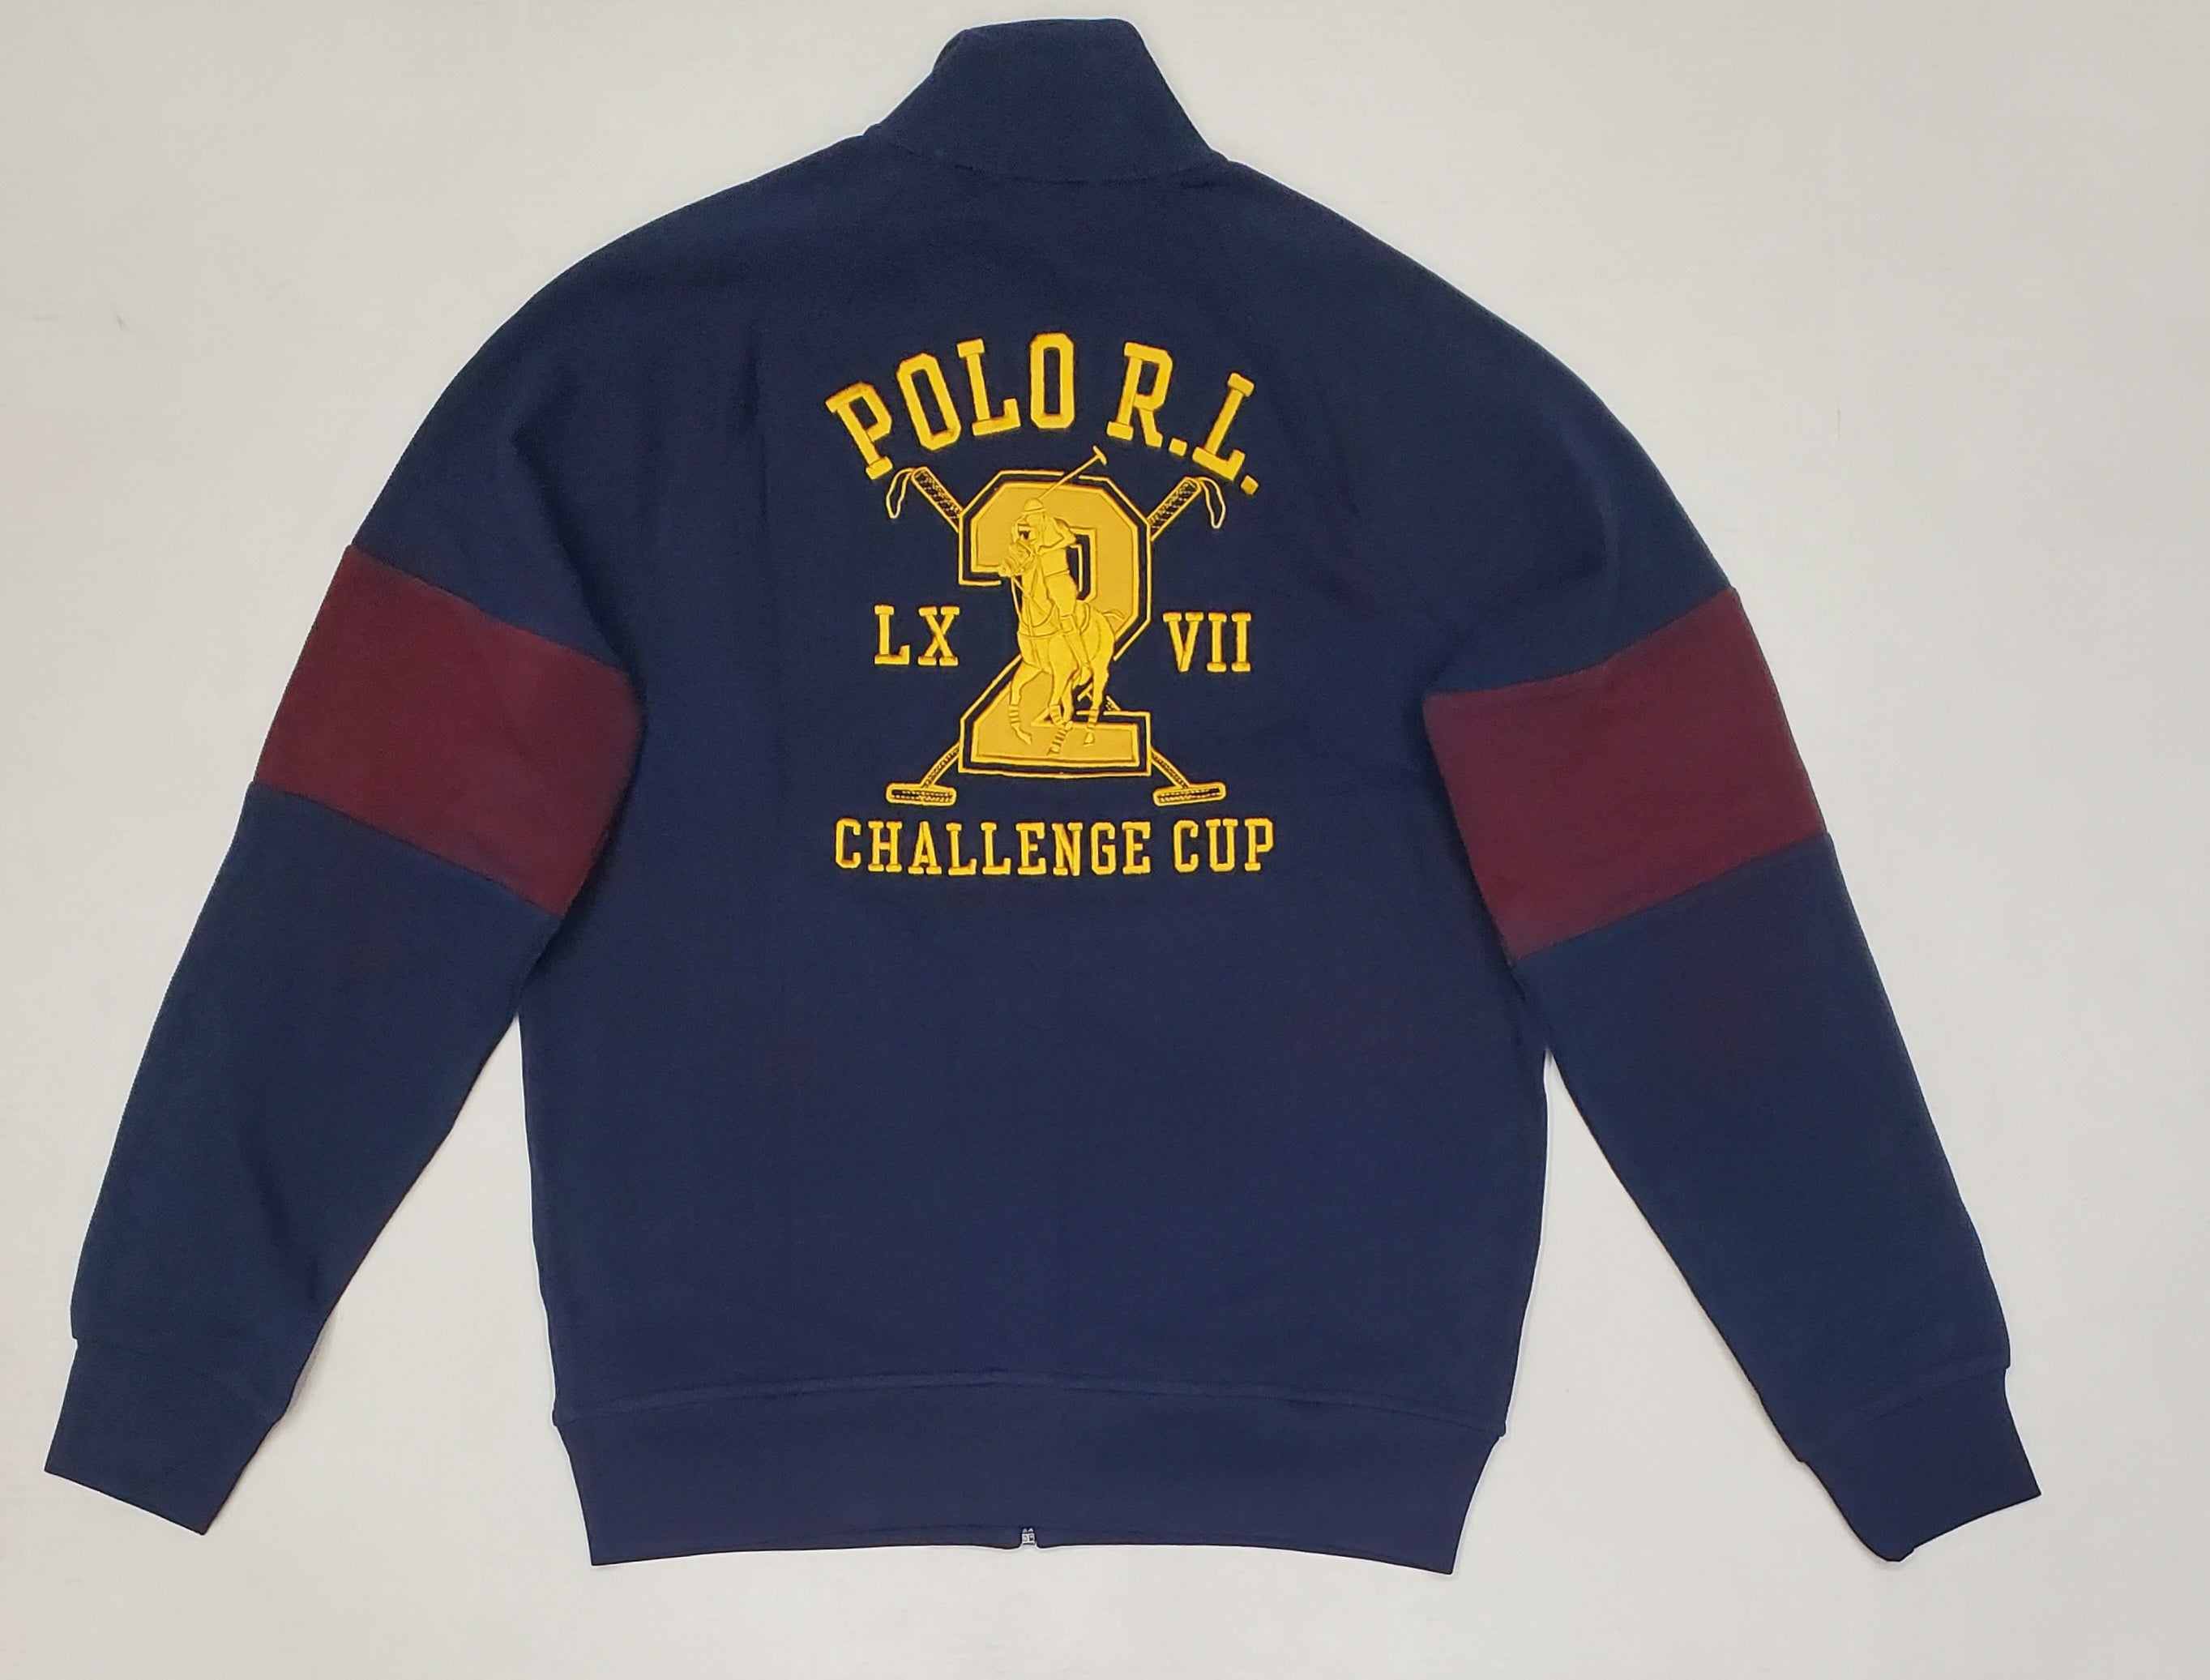 Nwt Polo Ralph Lauren Navy/Burgundy Challenge Cup #2 Big Pony Zip up Jacket